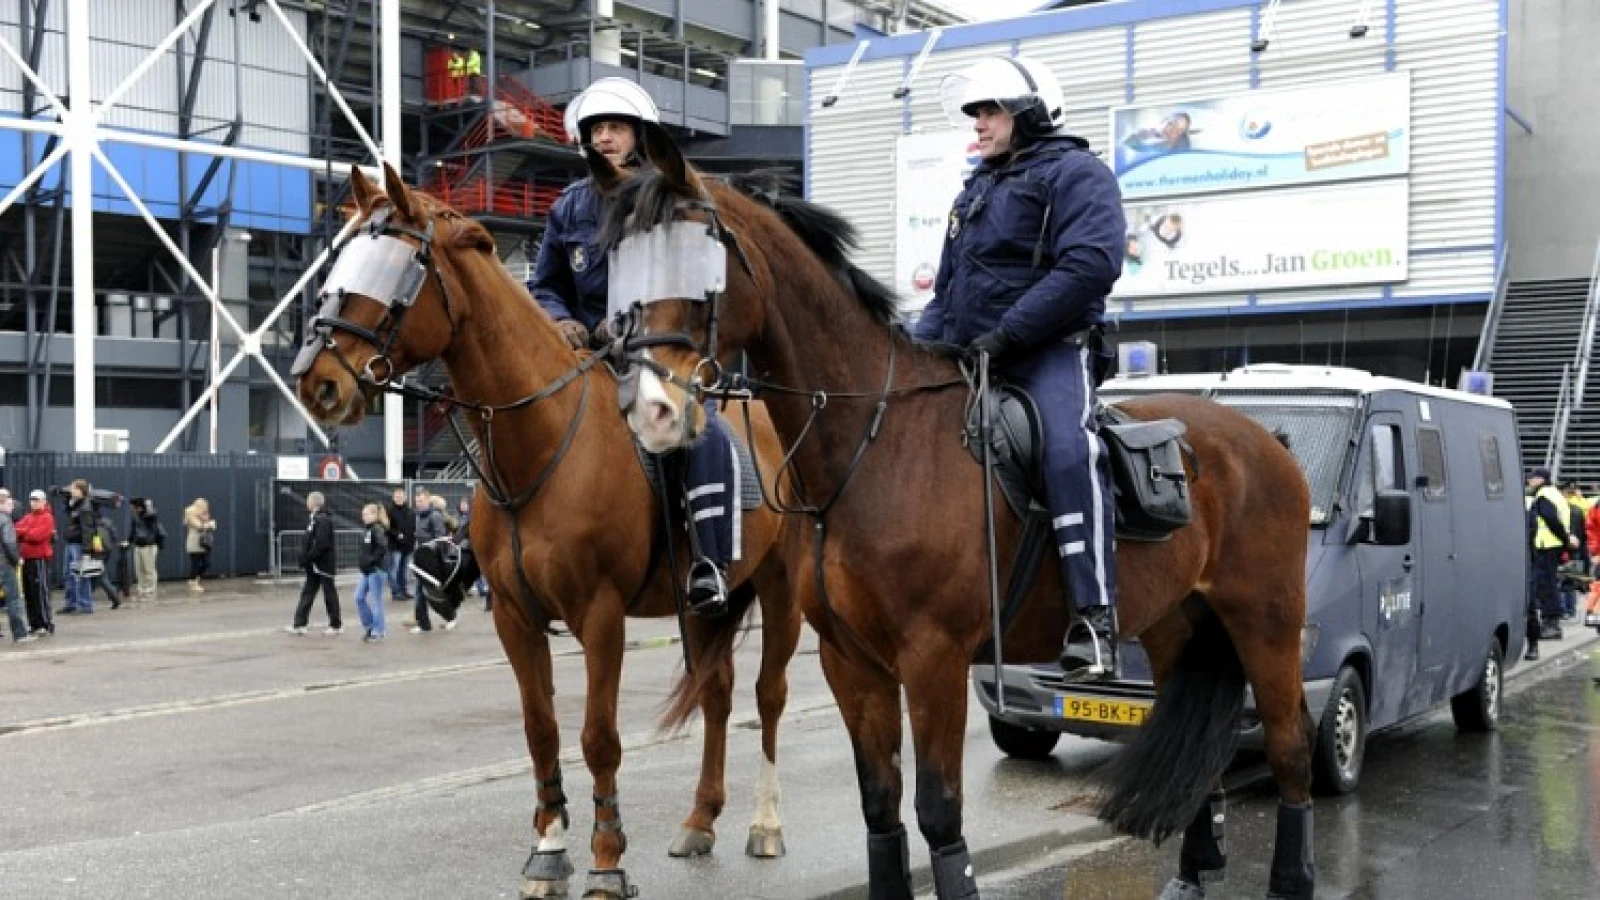 Politie is meeste manuren kwijt aan thuiswedstrijden van Feyenoord